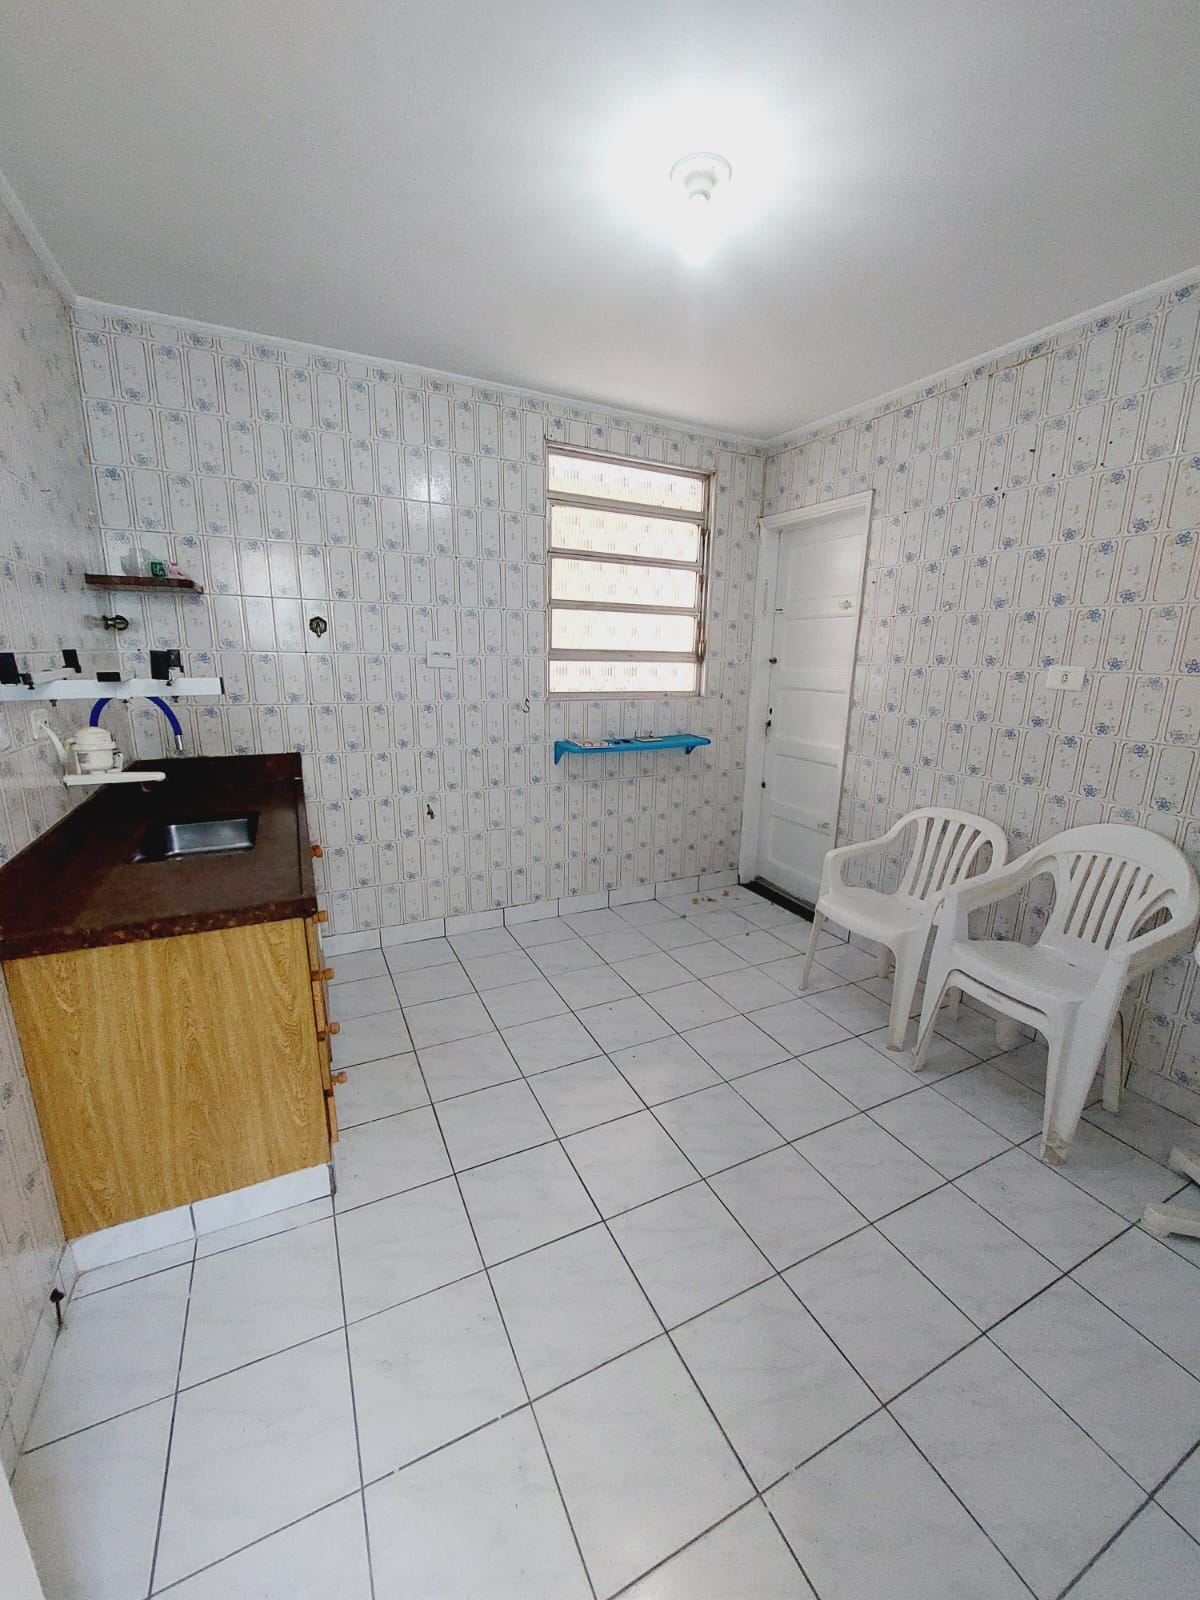 Foto do Imóvel - Casa Térrea 2 dorms c/ quintal e Edícula no Embaré em Santos/SP